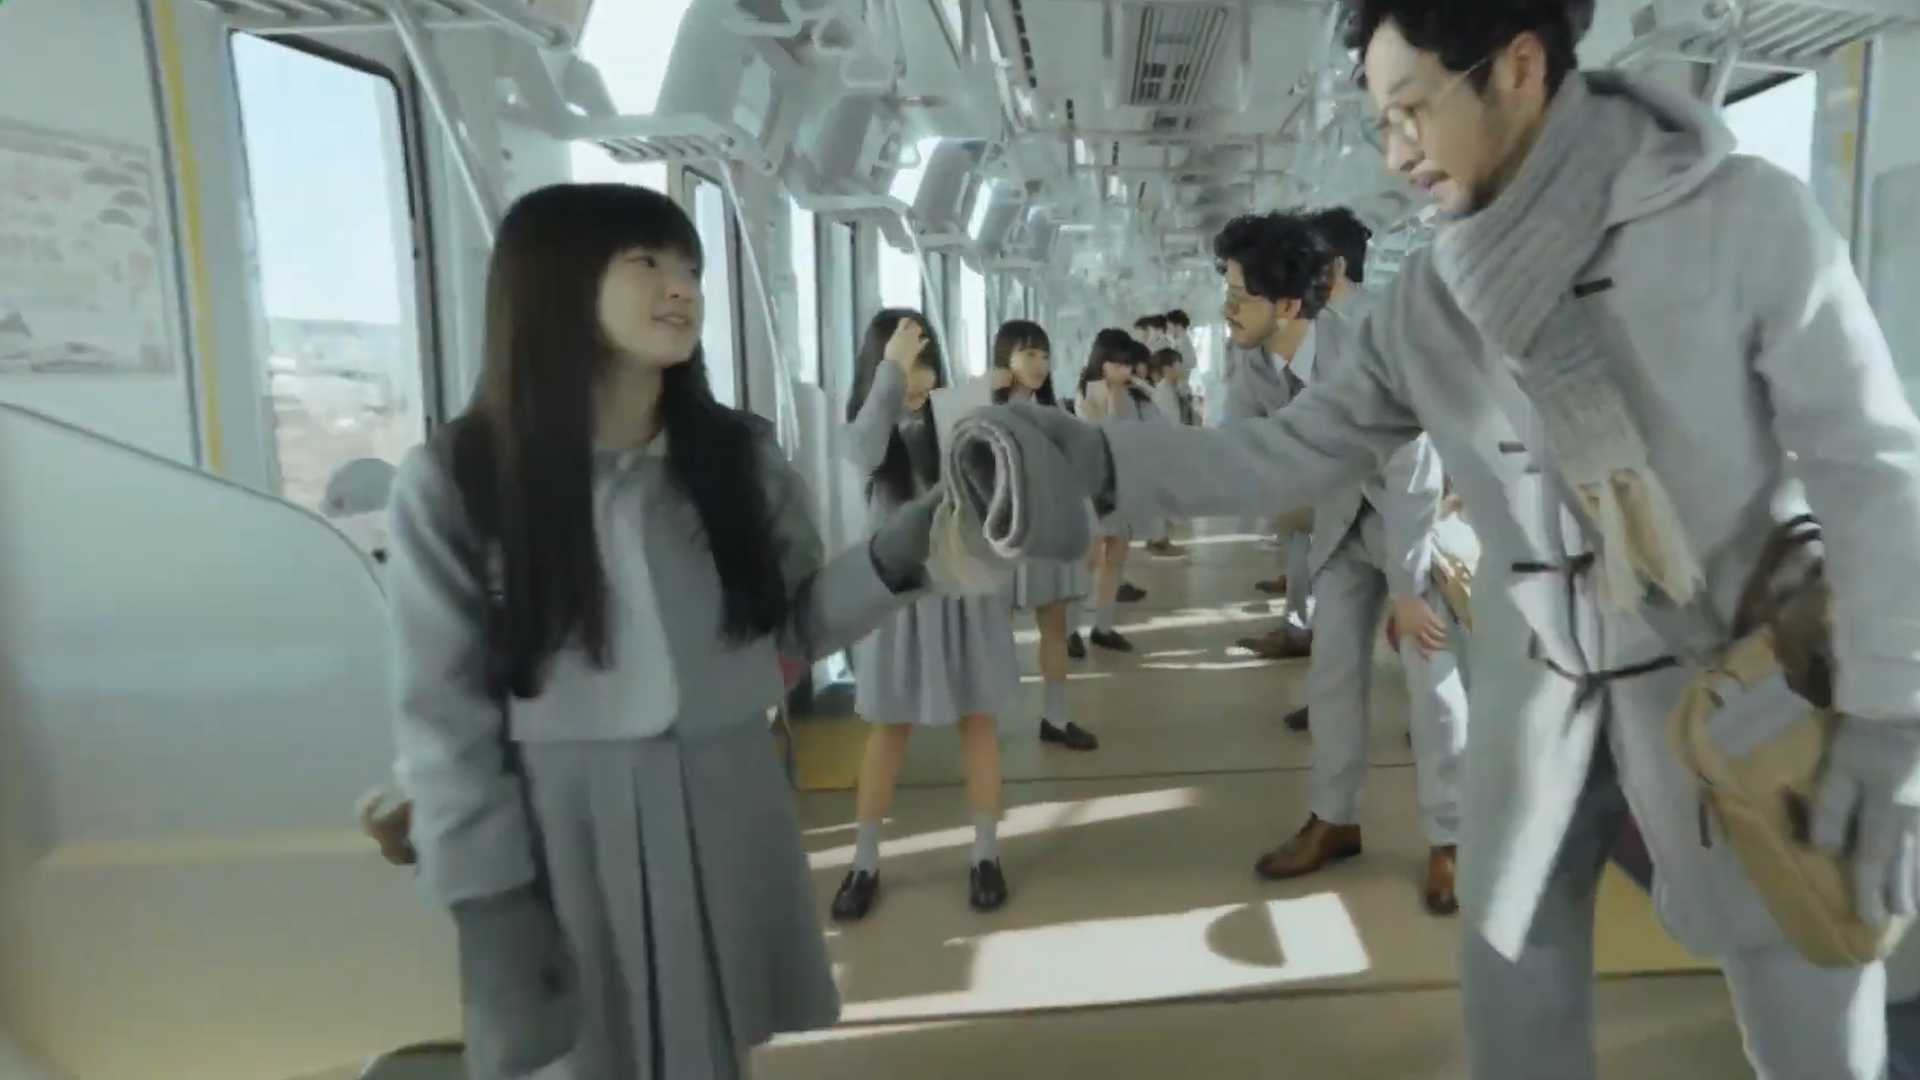 【日本地铁广告】父与女十二年地铁风景时光穿越 一镜到底